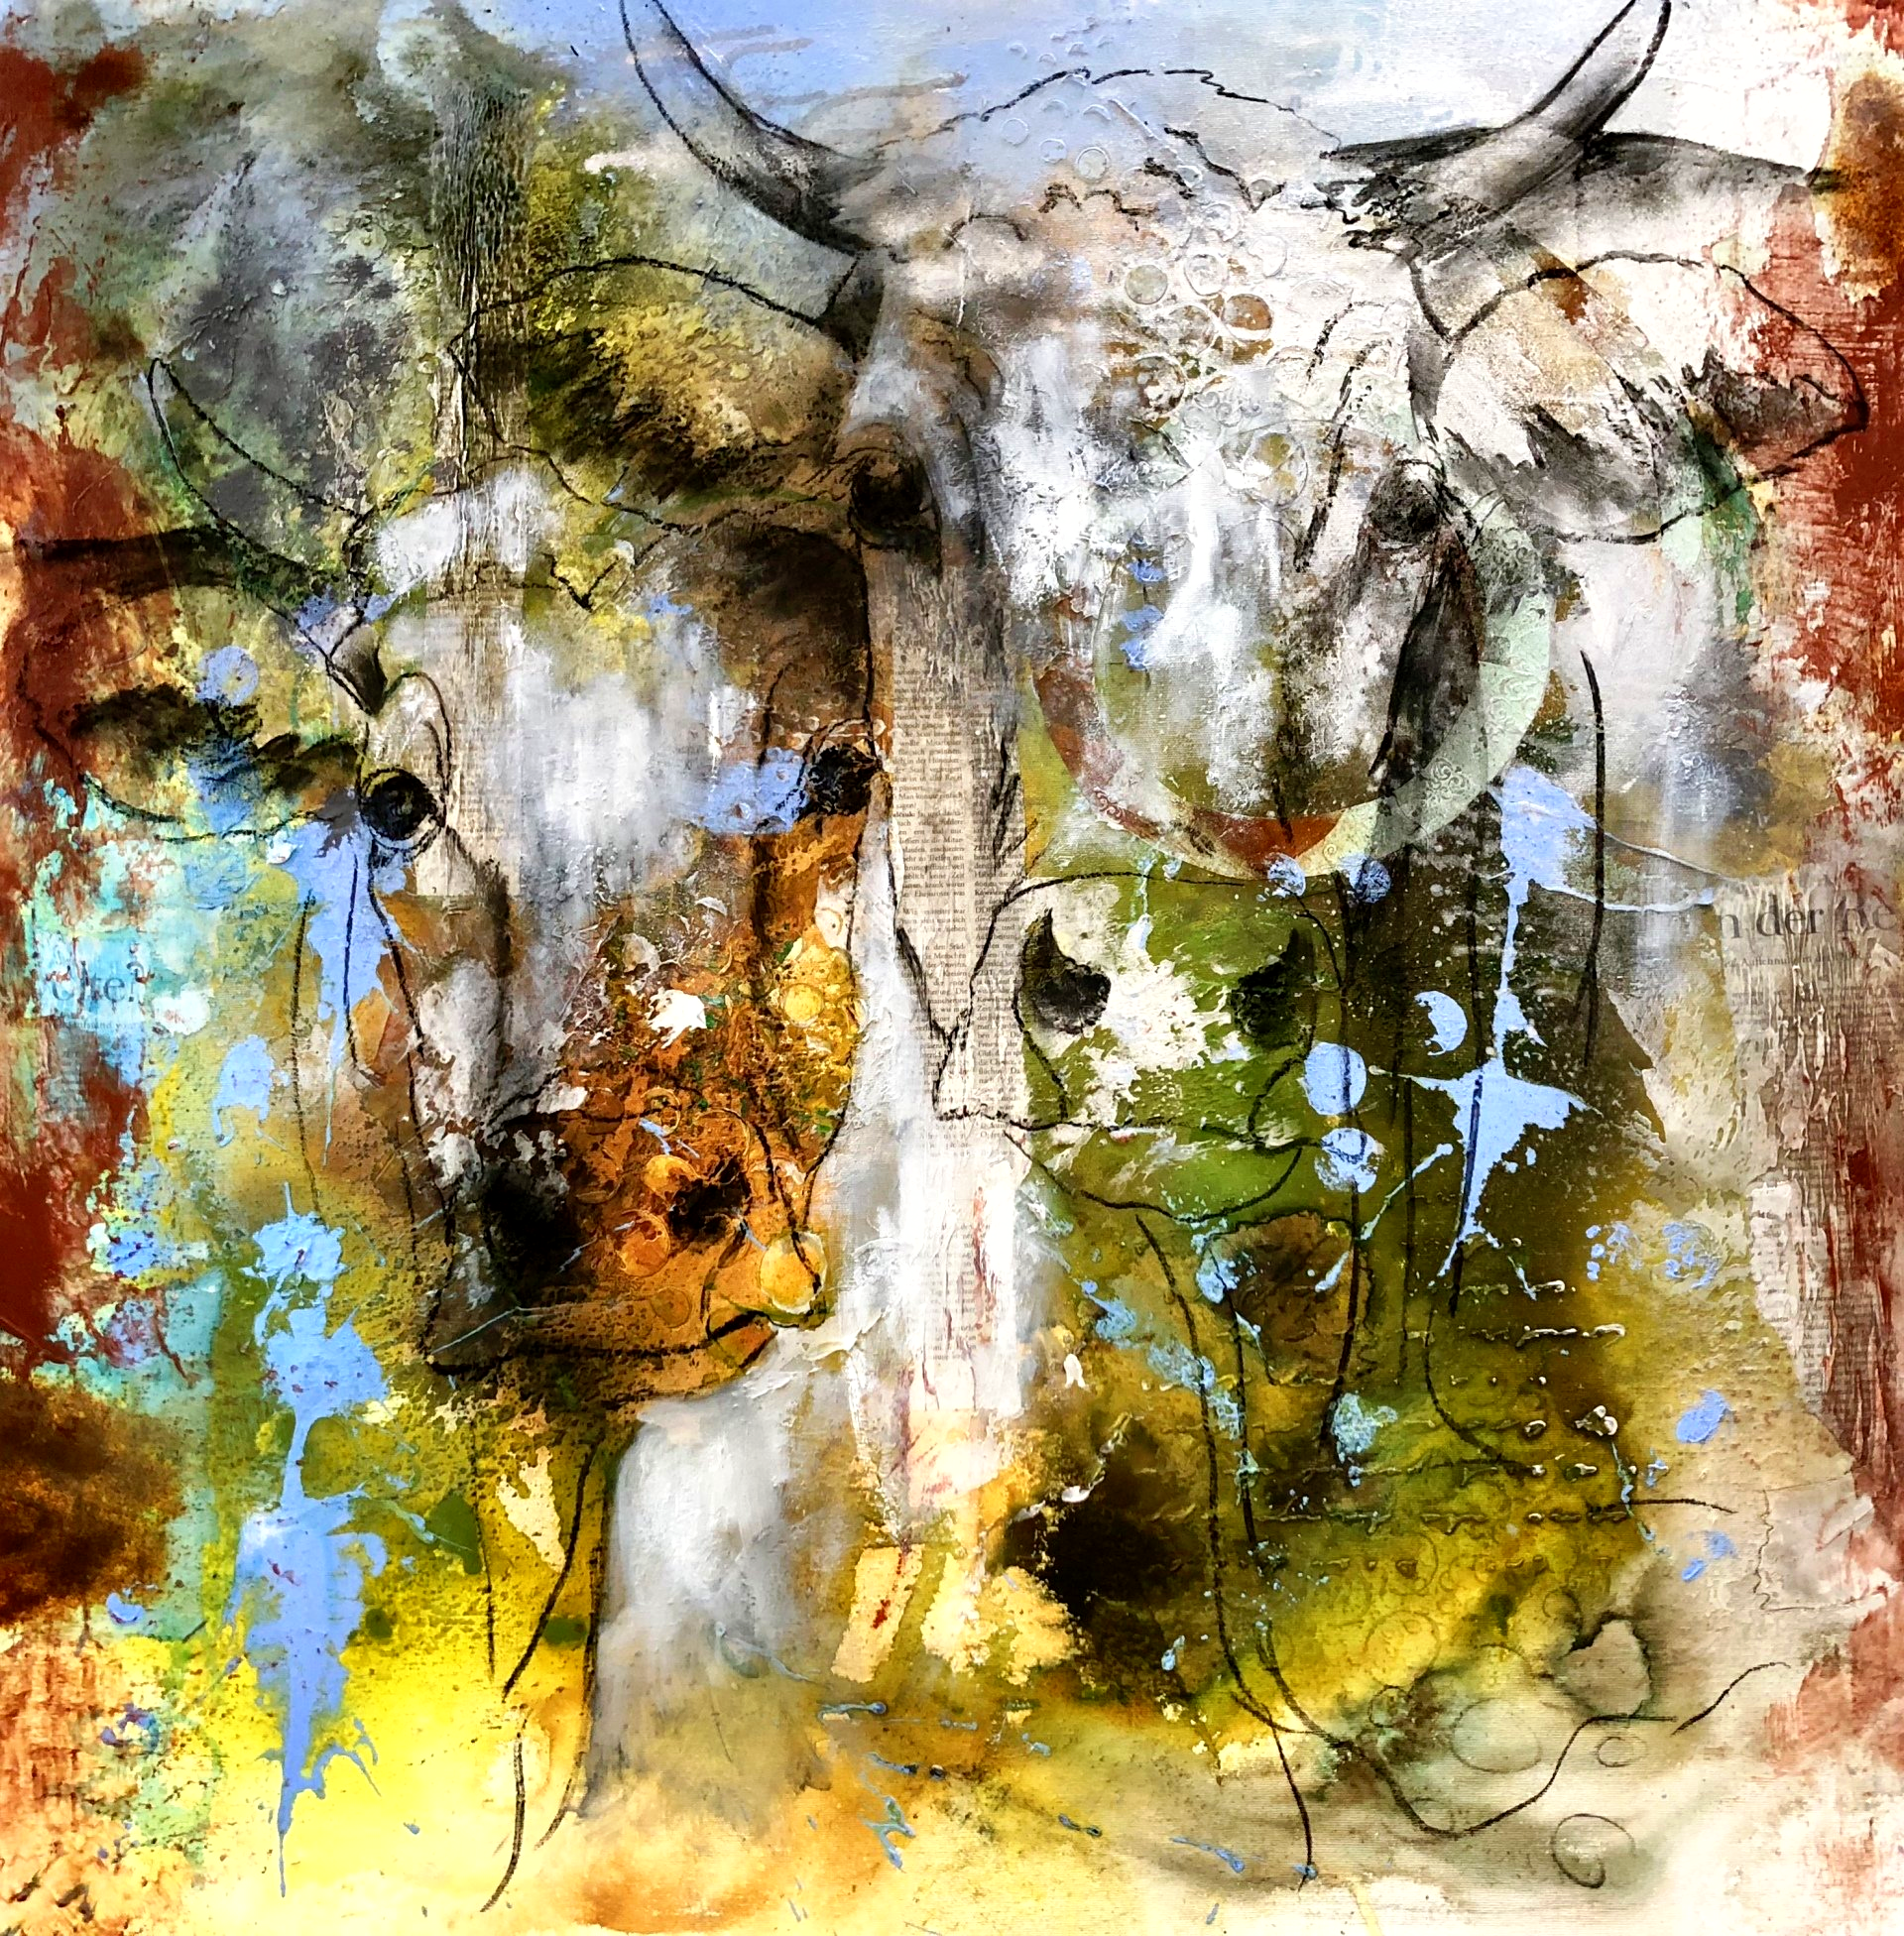 Farbenfrohe Kühe in Acryl, Mixed Media, Collage und Kohle Zeichnung